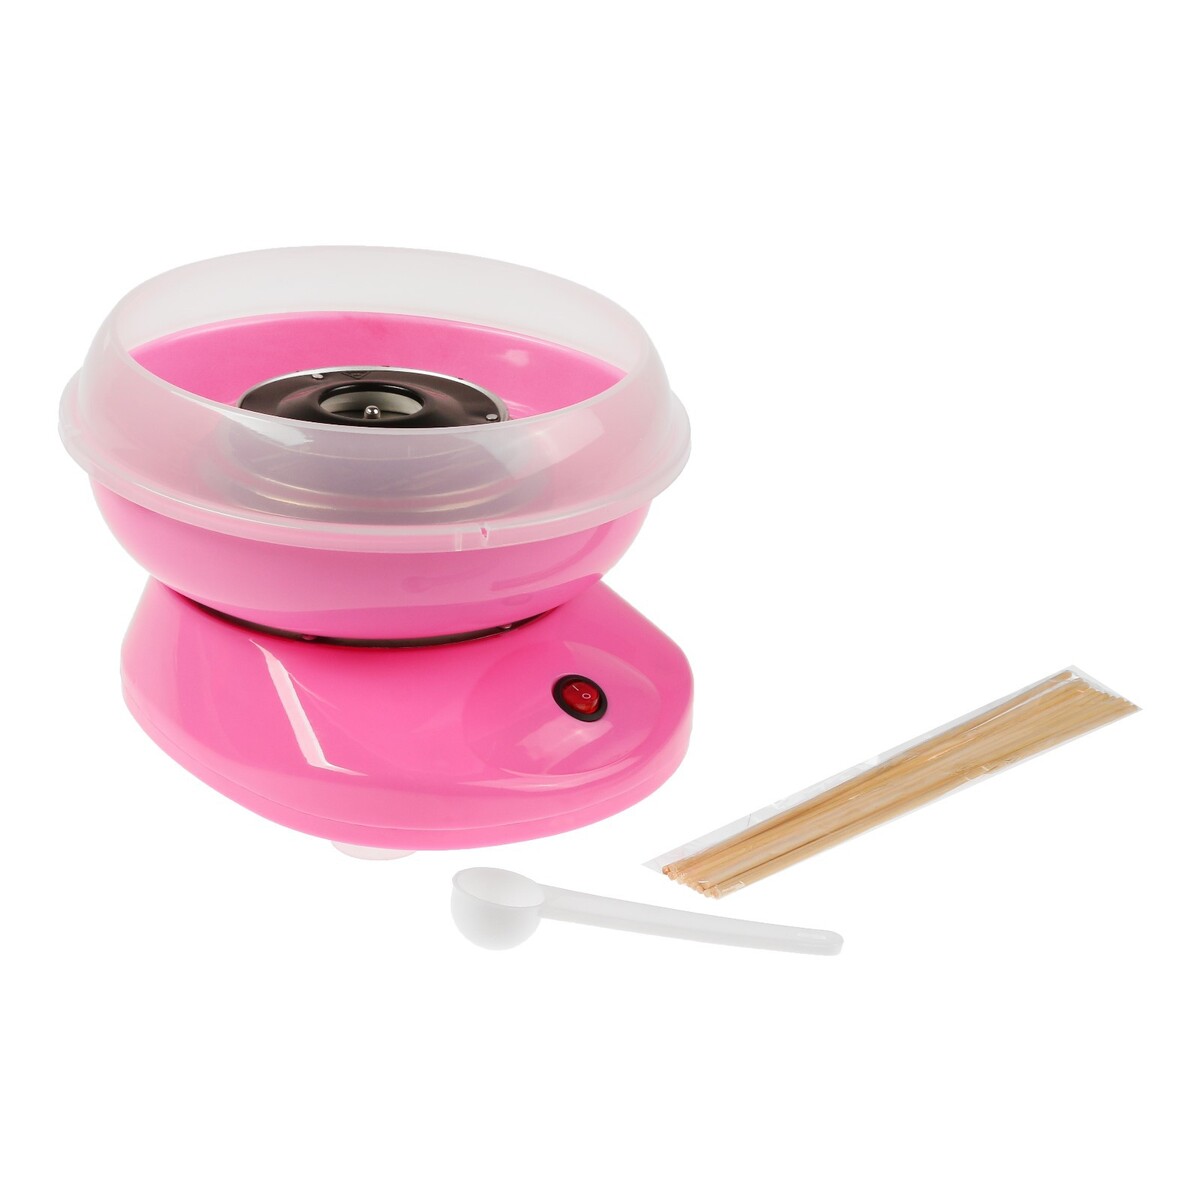 Аппарат для приготовления сладкой ваты luazon lcc-01, 500 вт, розовый аппарат сварочный wert mig 120